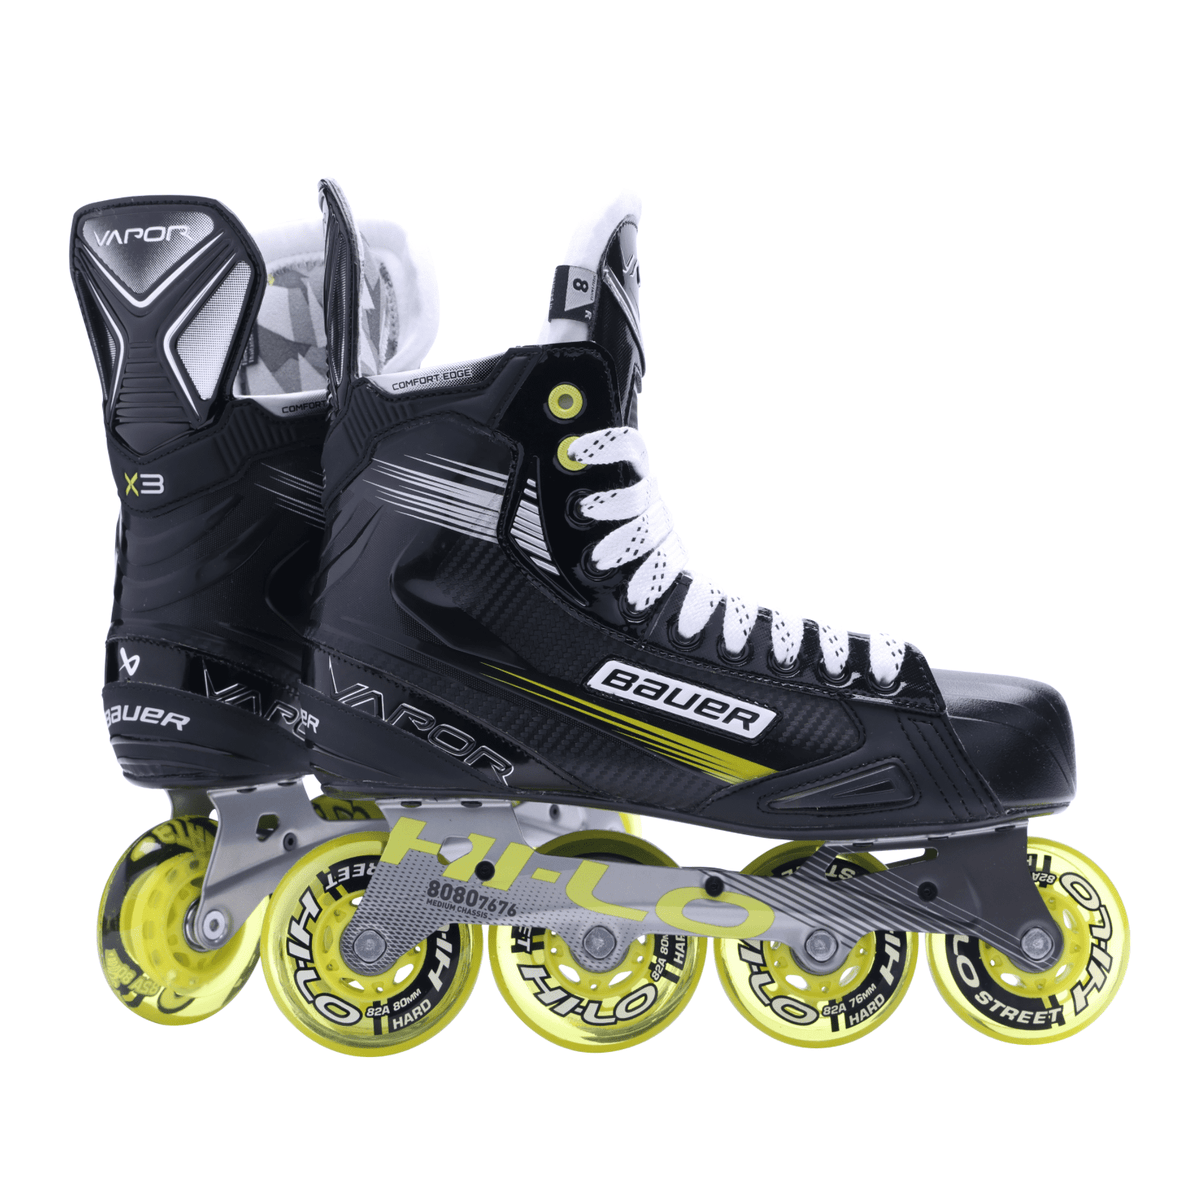 Bauer Vapor X3 Inline Hockey Skates